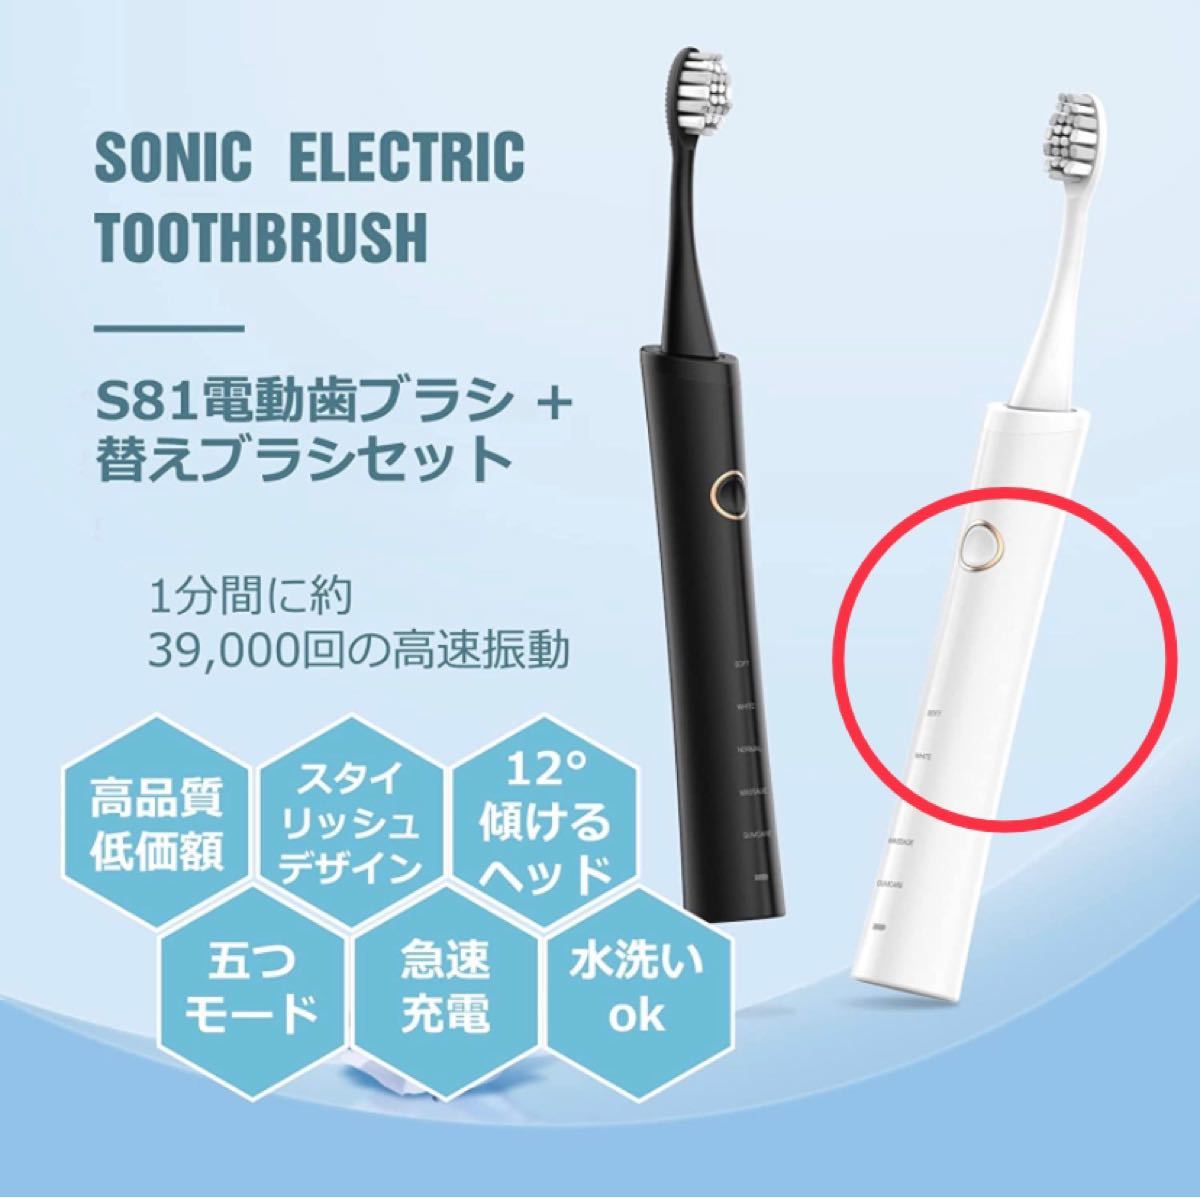 電動歯ブラシ 音波歯ブラシ ソニック 無線充電 IPX７防水 替えブラシ6本 5つのモード 歯ブラシ 収納ケース付き 音波歯ブラシ